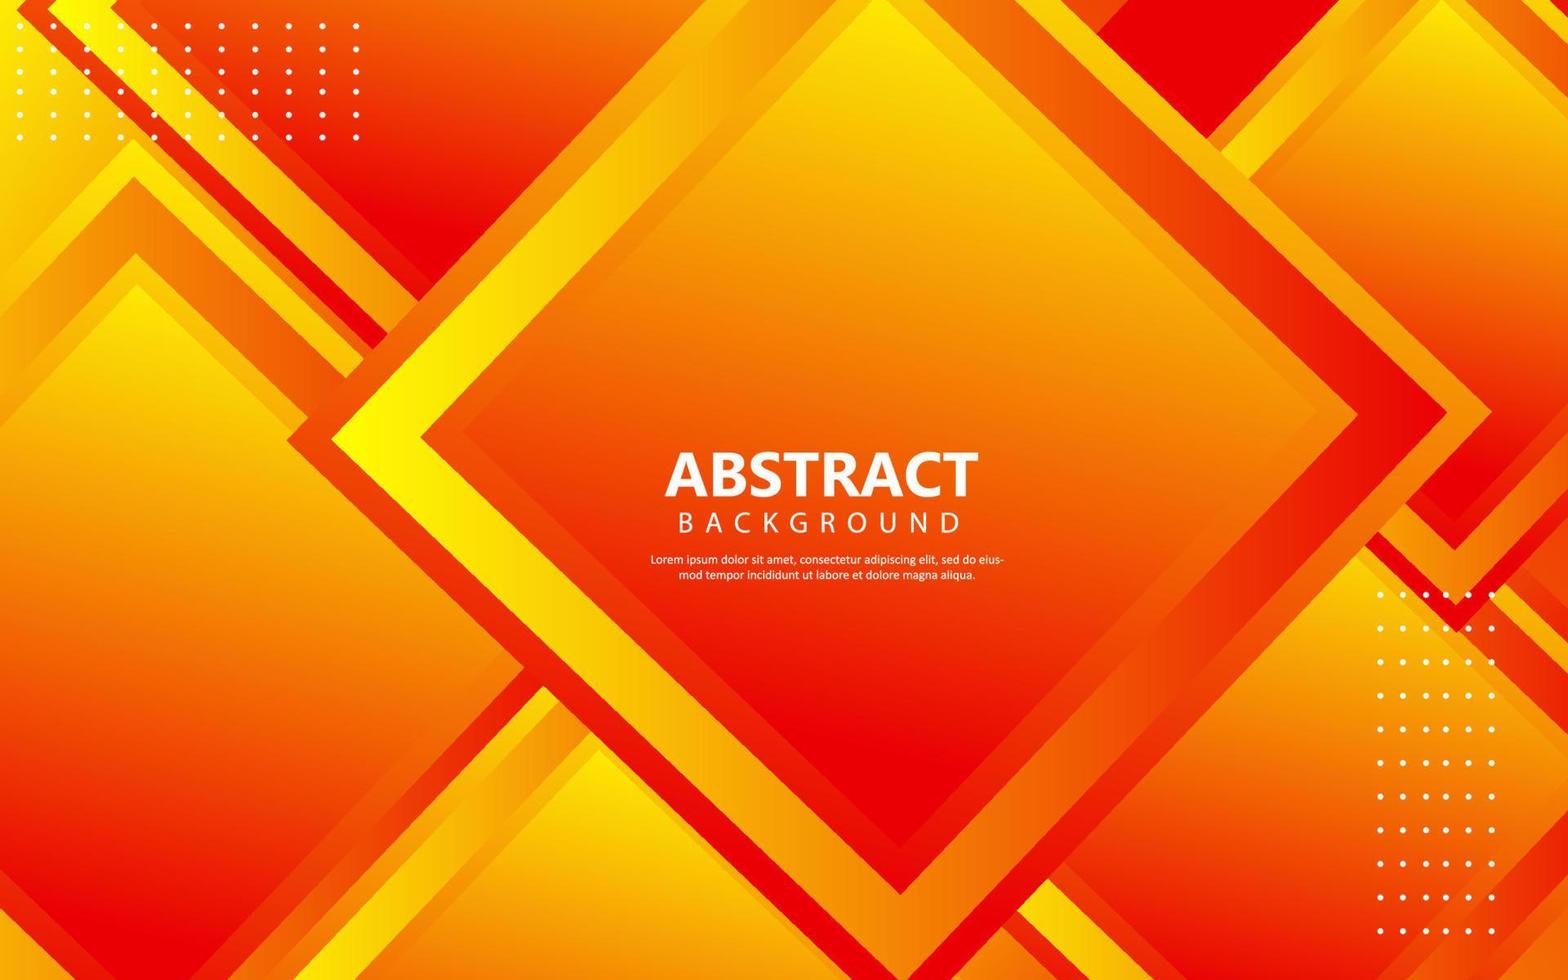 moderner abstrakter geometrischer orangefarbener Hintergrund vektor